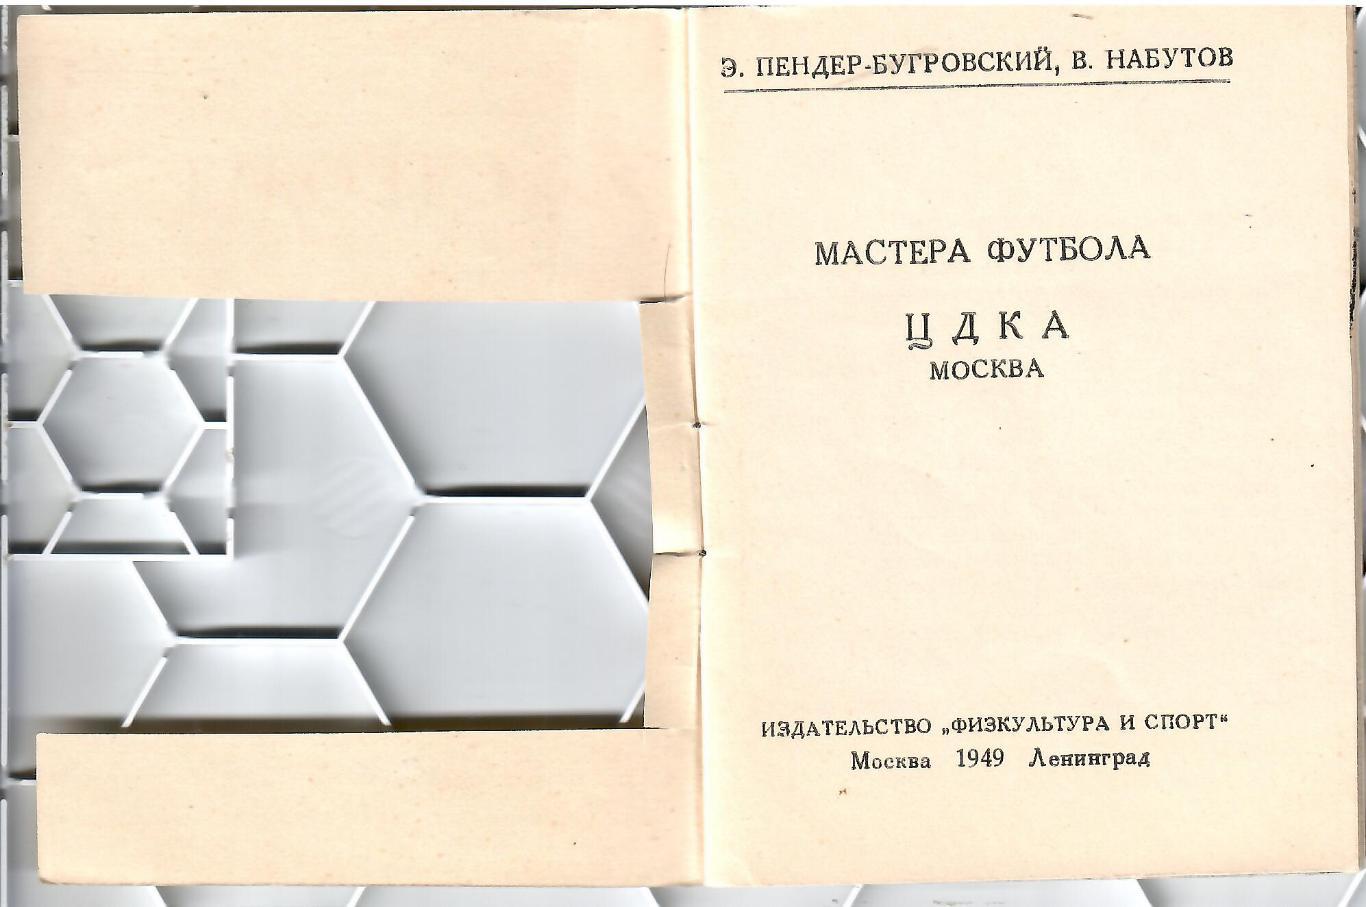 1949 СправочникЦДКА 16 стр Типография Эрмитажа. Тираж 25000 1